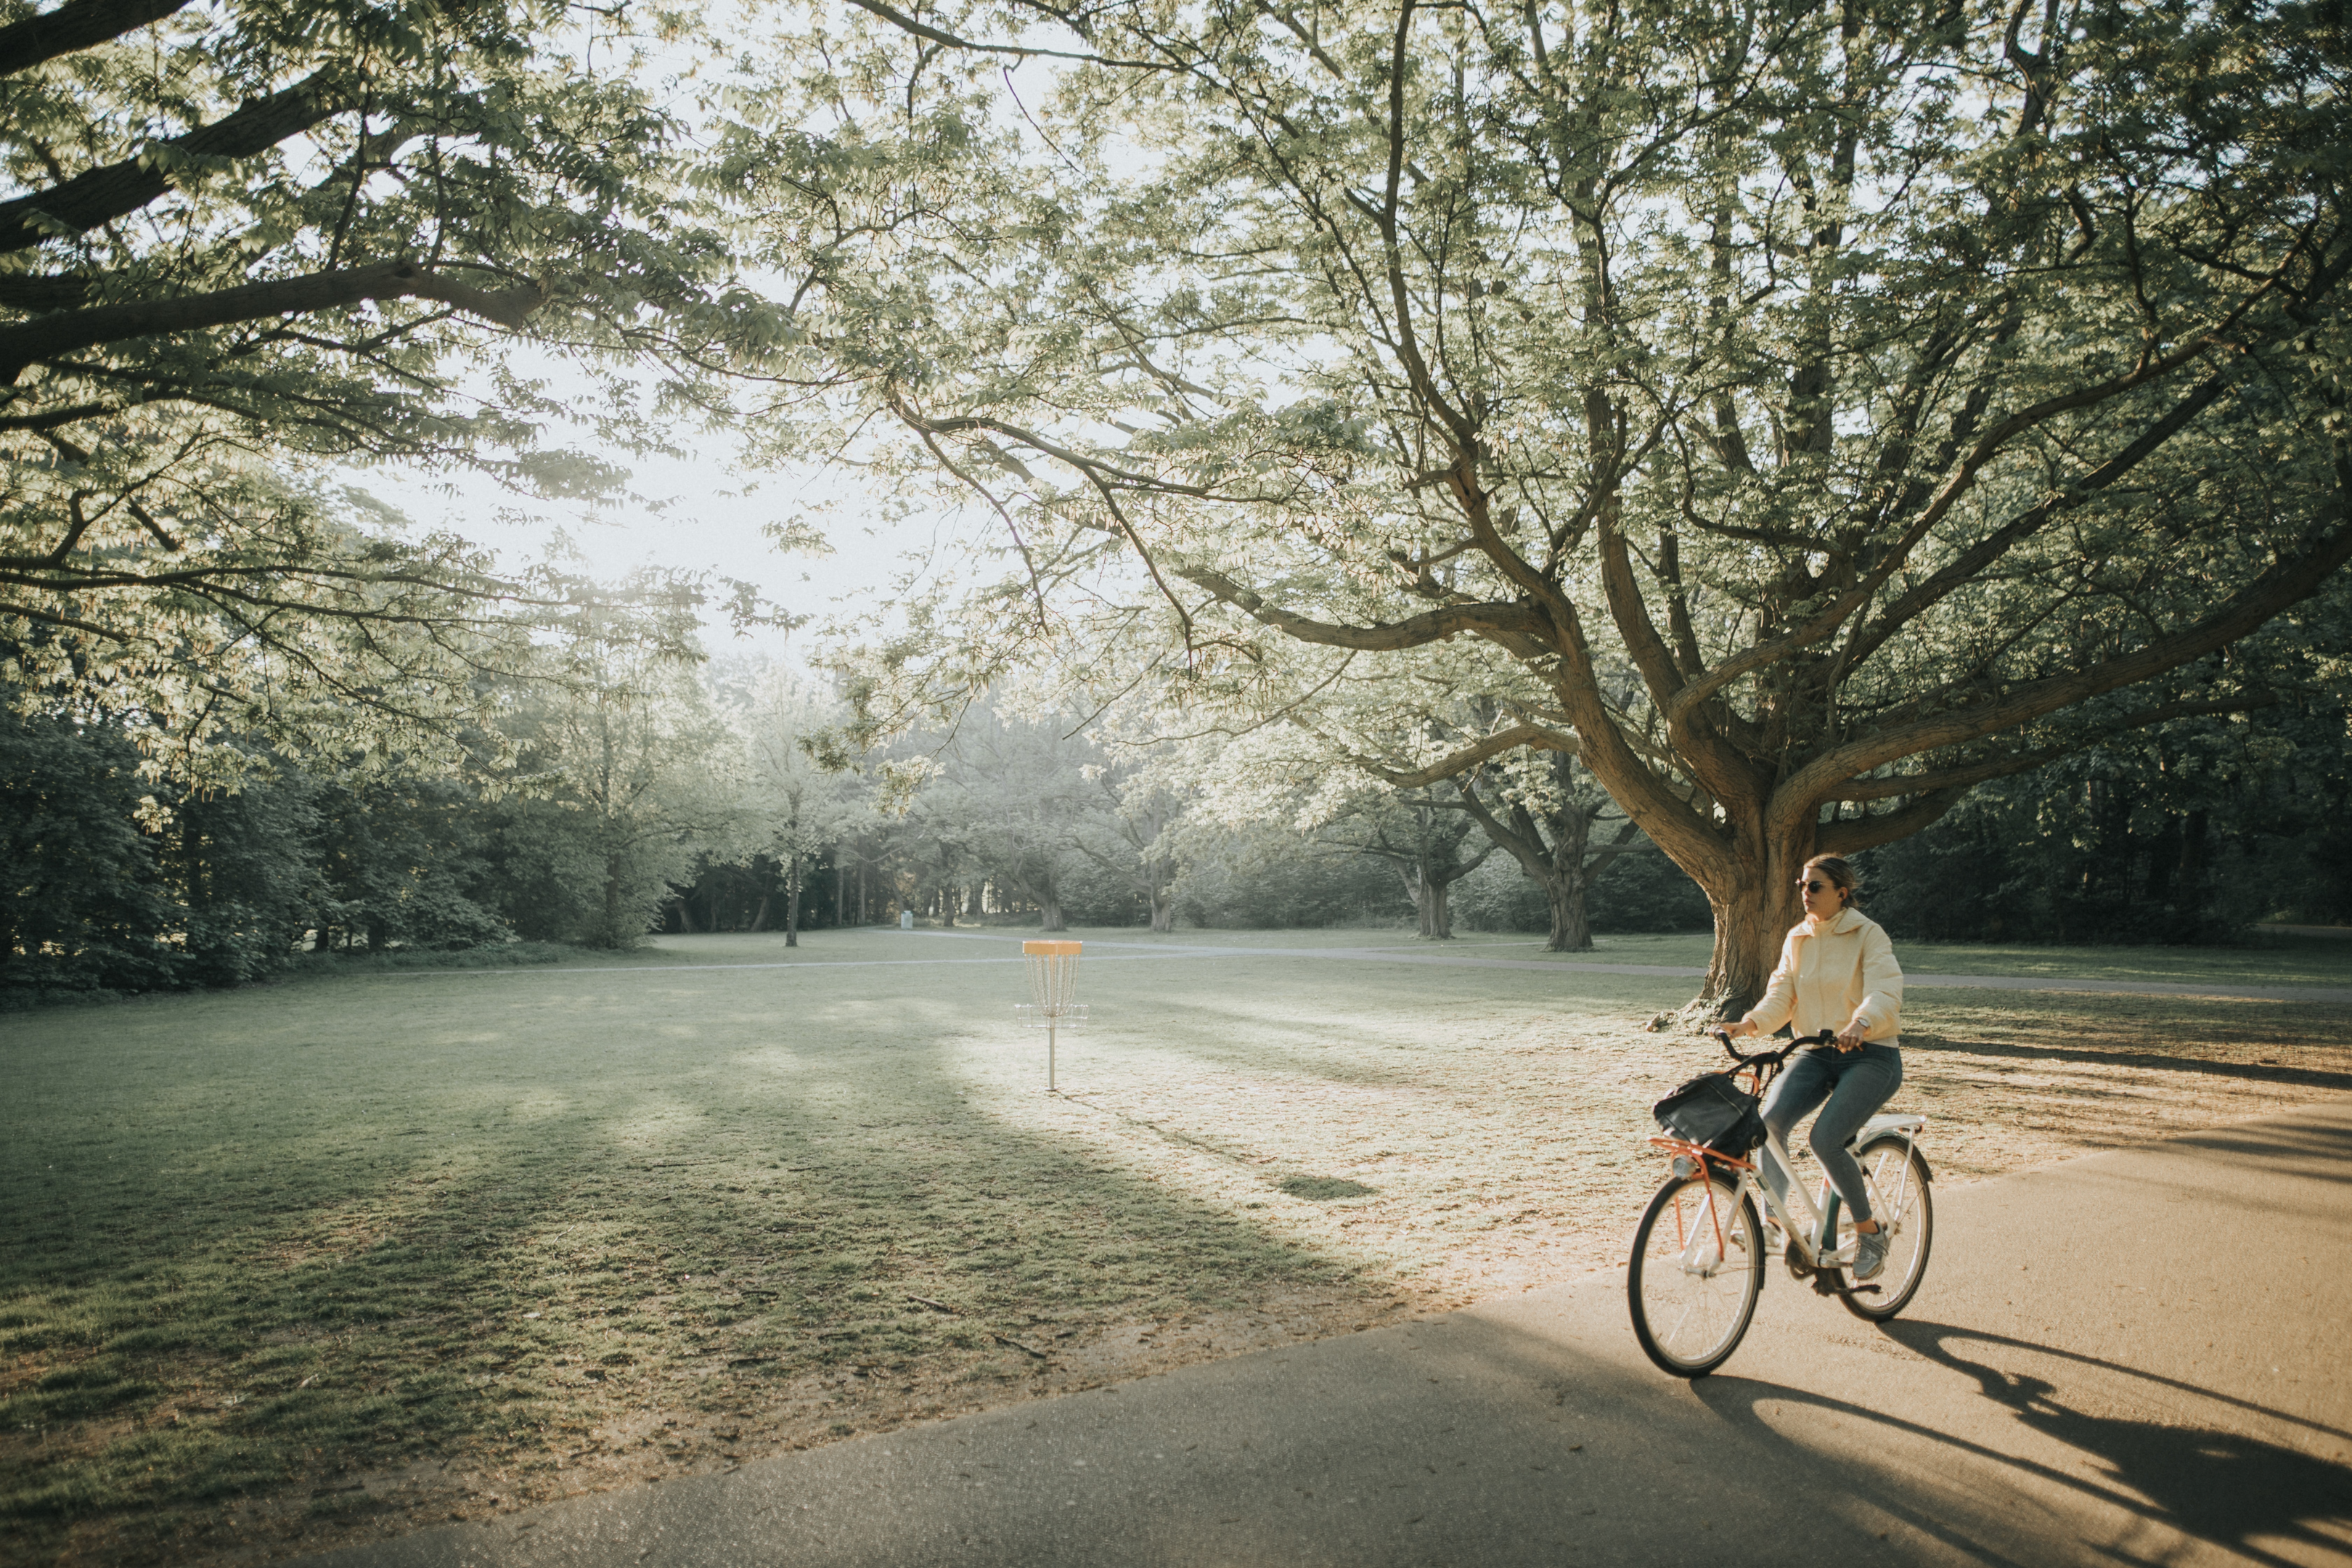 Pessoa pedalando em parque com árvores